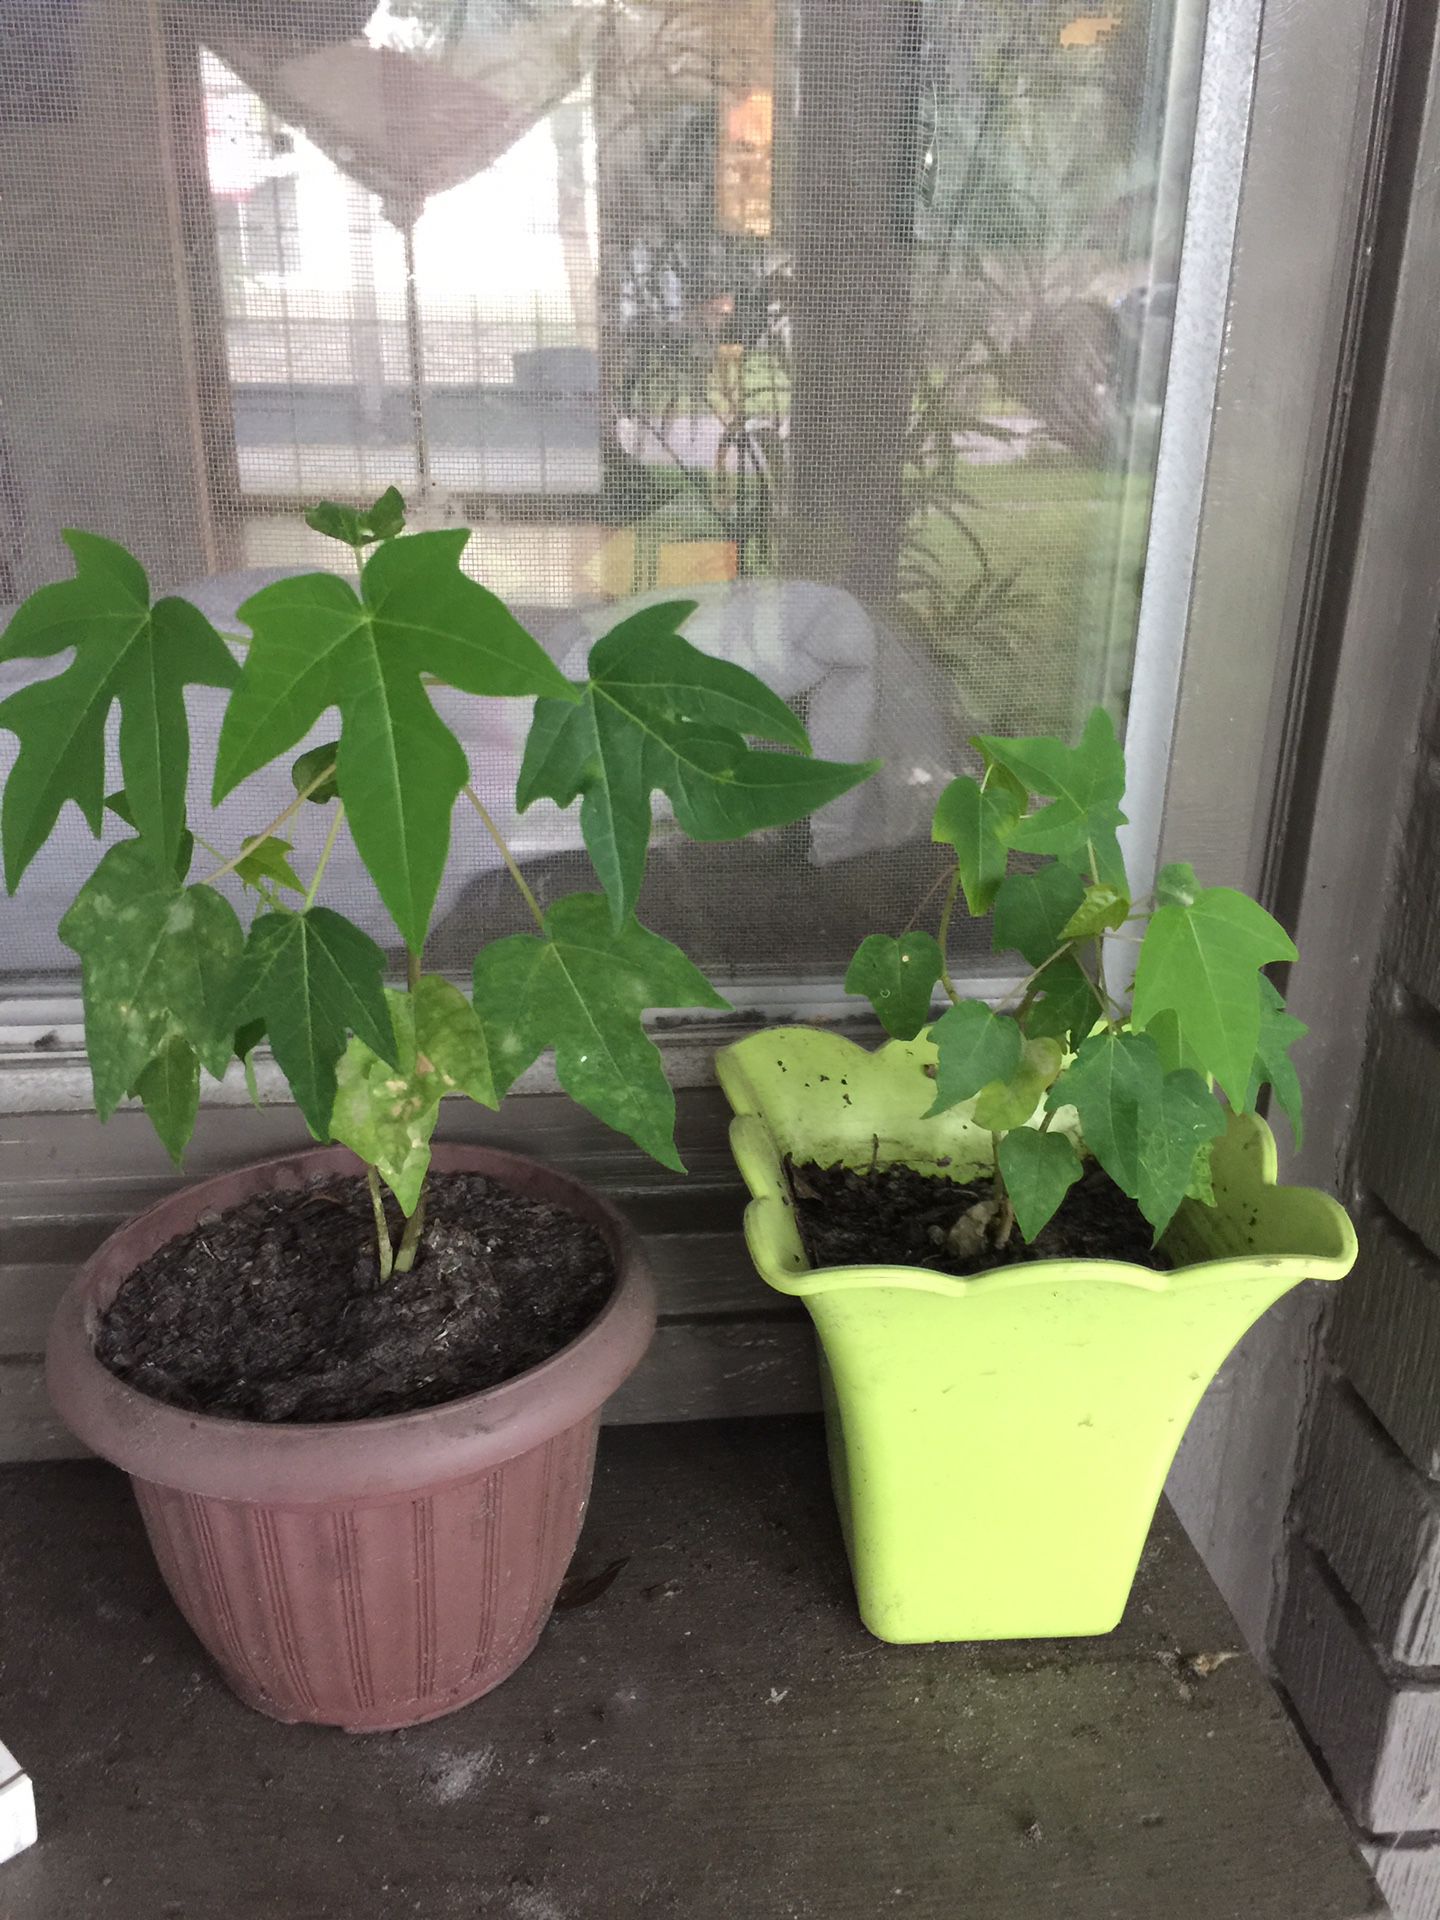 2 Papaya trees for $10